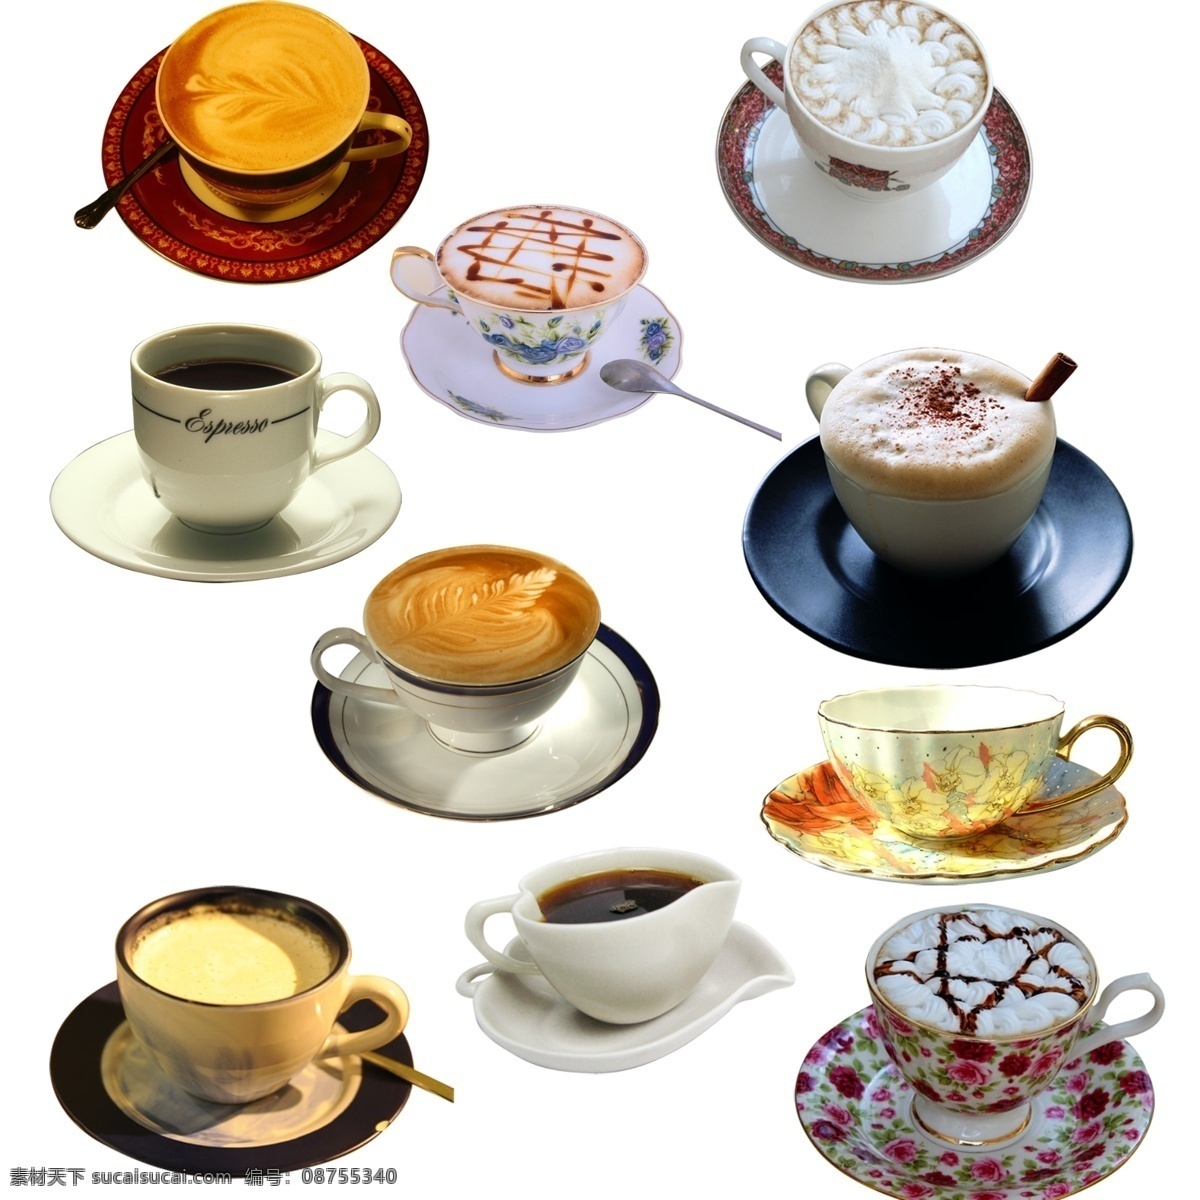 热奶咖啡 喝 热咖啡 享受 冰咖啡 黑咖啡 白咖啡 咖啡机 咖啡店 咖啡因 咖啡馆 热饮 饮料 杯子 咖啡杯 咖啡拉花 下午茶